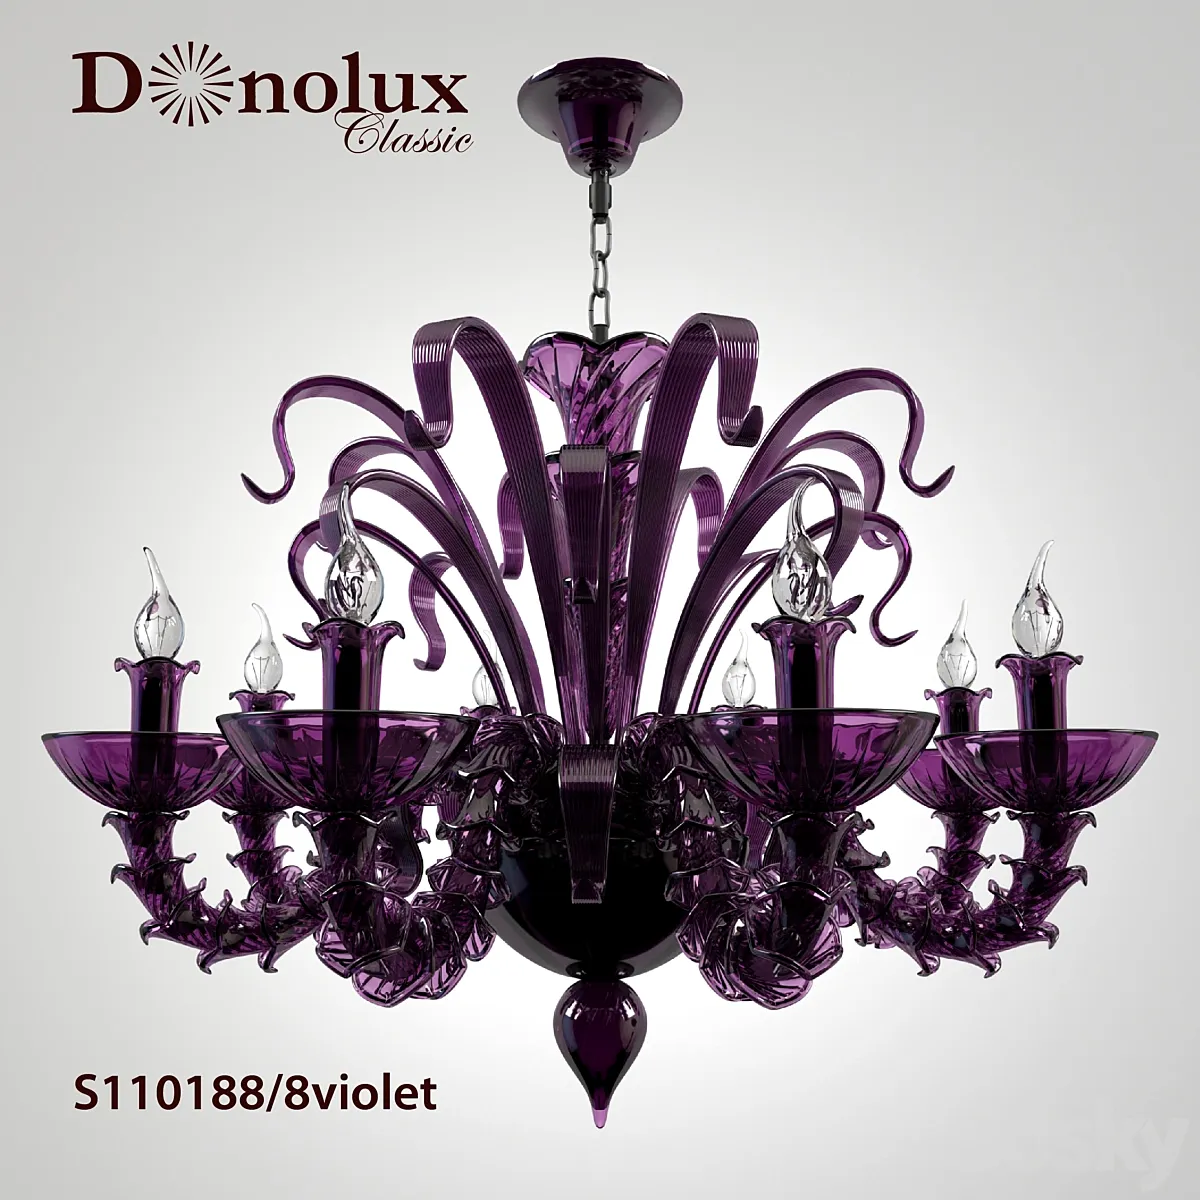 مدل سه بعدی لوستر تری دی مکس Chandelier Donolux S110188 8violet